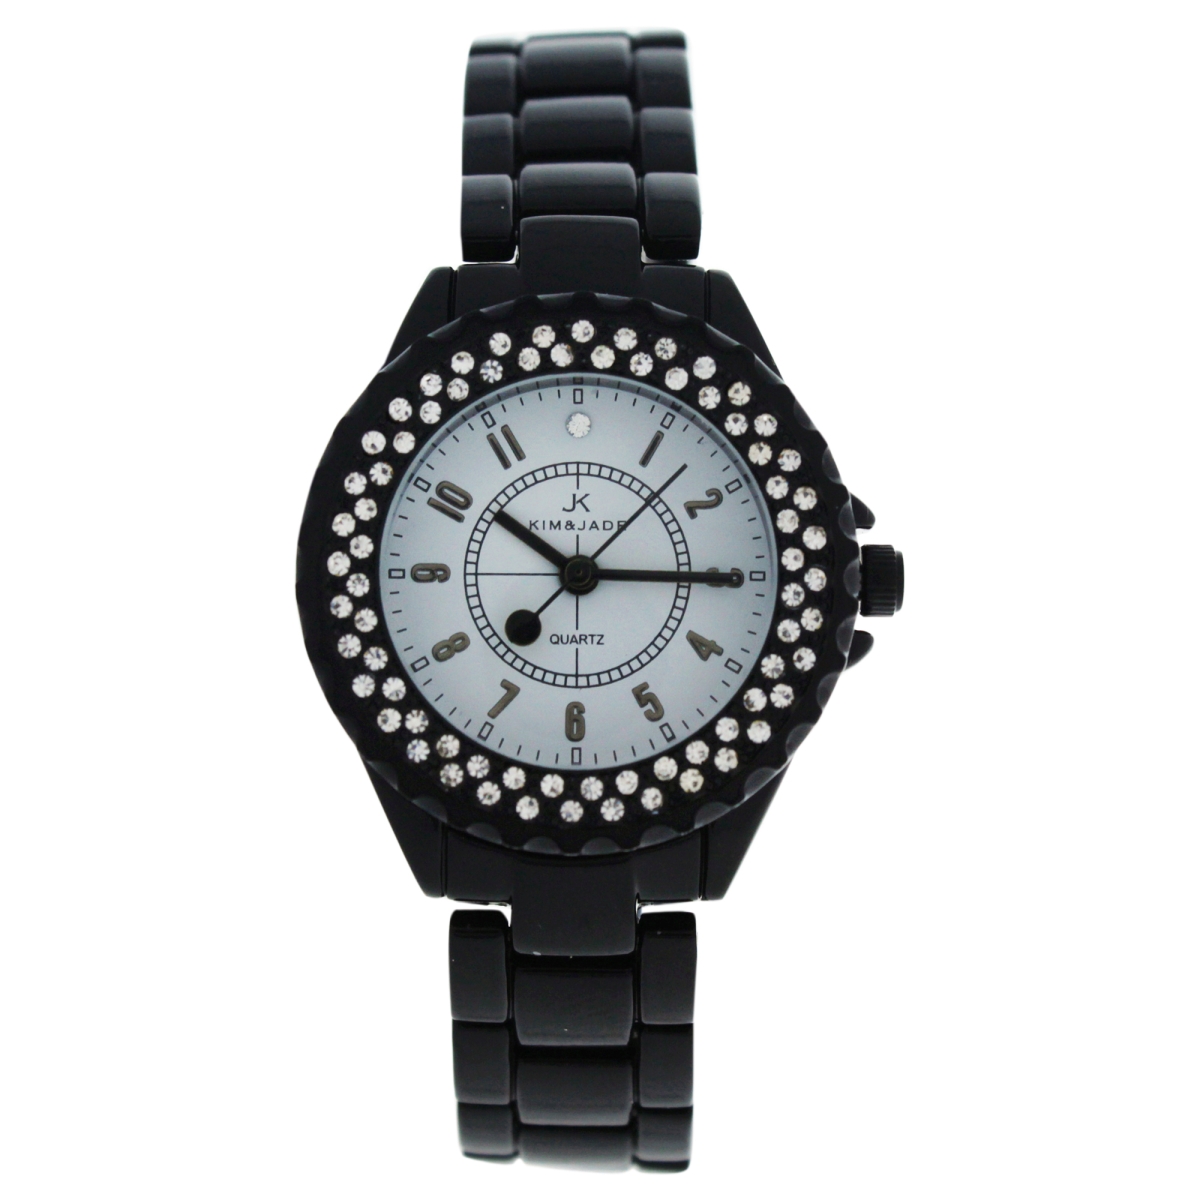 W-wat-1527 Black Stainless Steel Bracelet Watch For Women - 2033l-bw